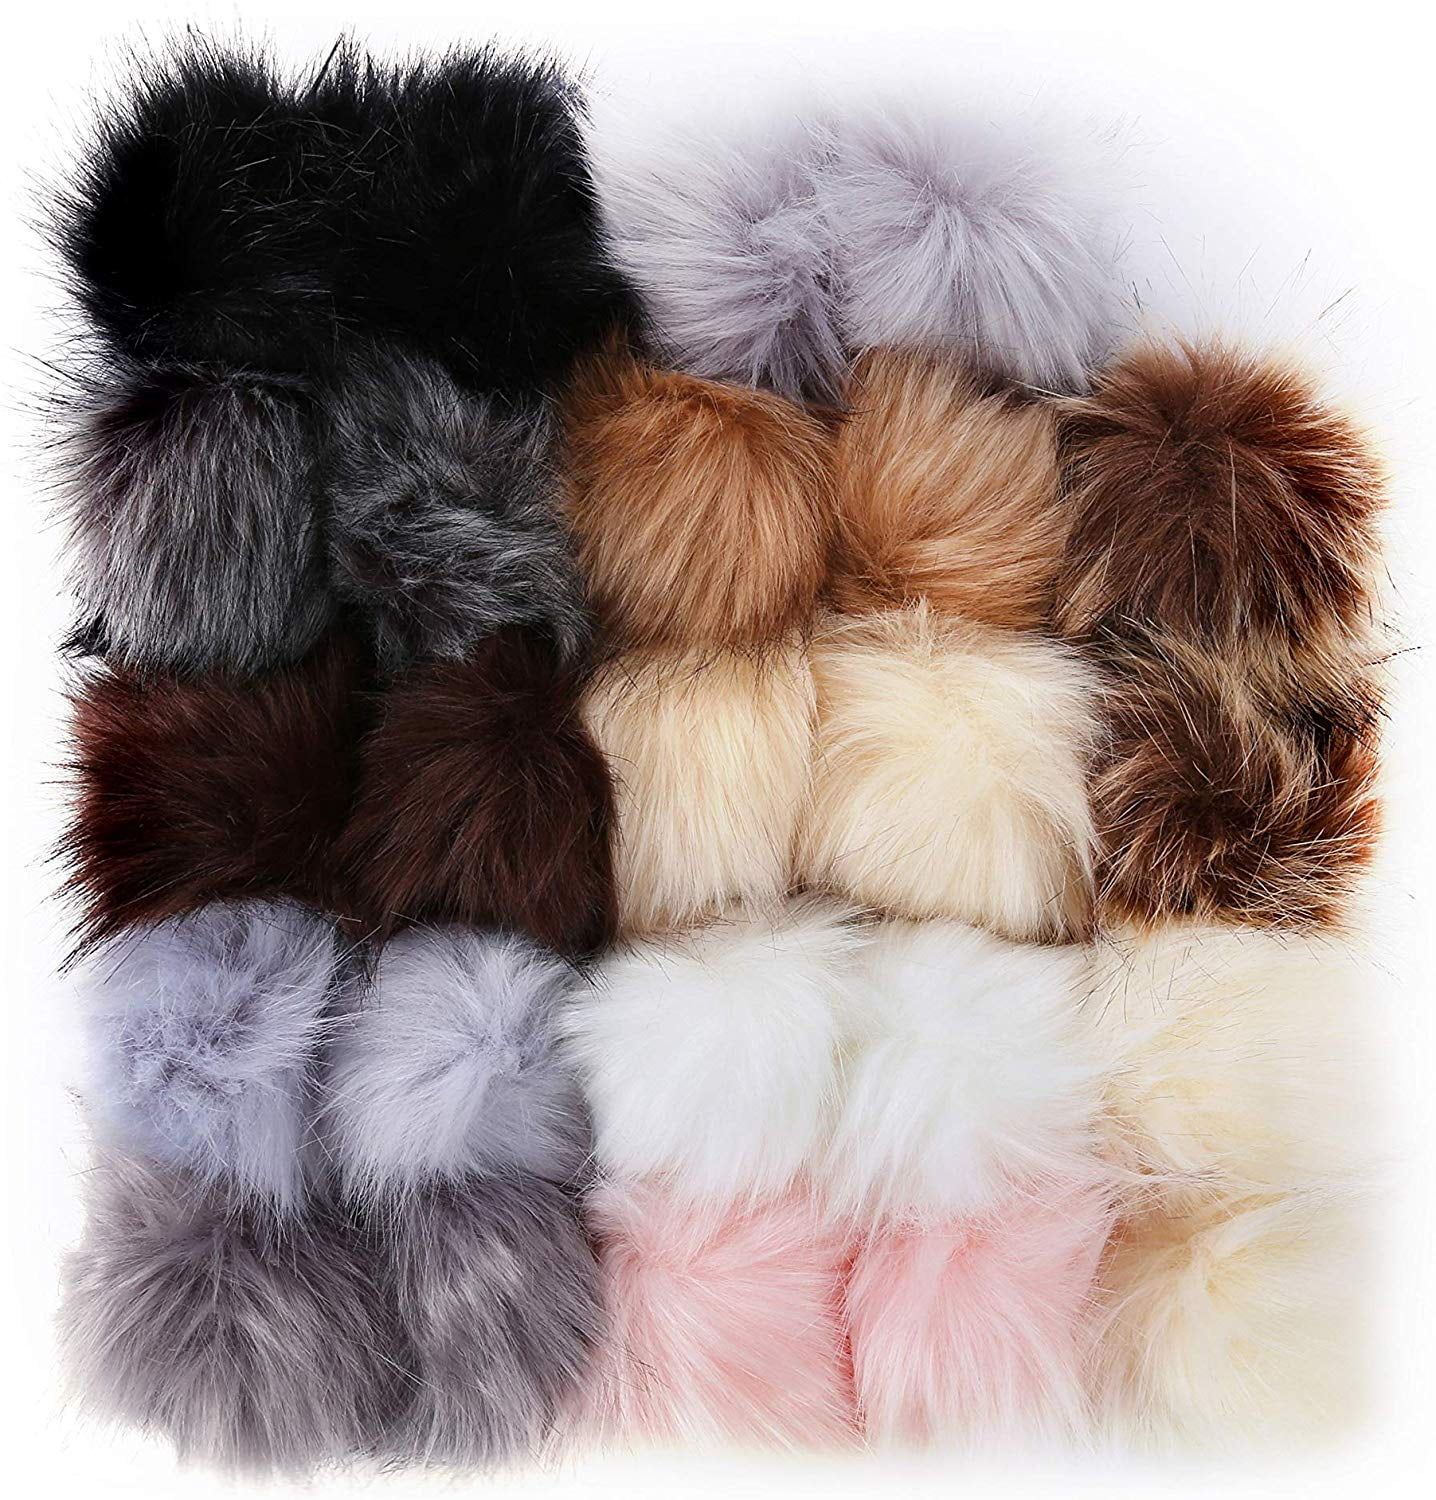 BQTQ 30 Pieces Faux Fur Pompoms Balls DIY Faux Rabbit Fur Fluffy Pompom with Elastic Loop for Hats Keychains Scarves Gloves Bags Accessories 15 Bright Colours, 2 Pcs per Colour